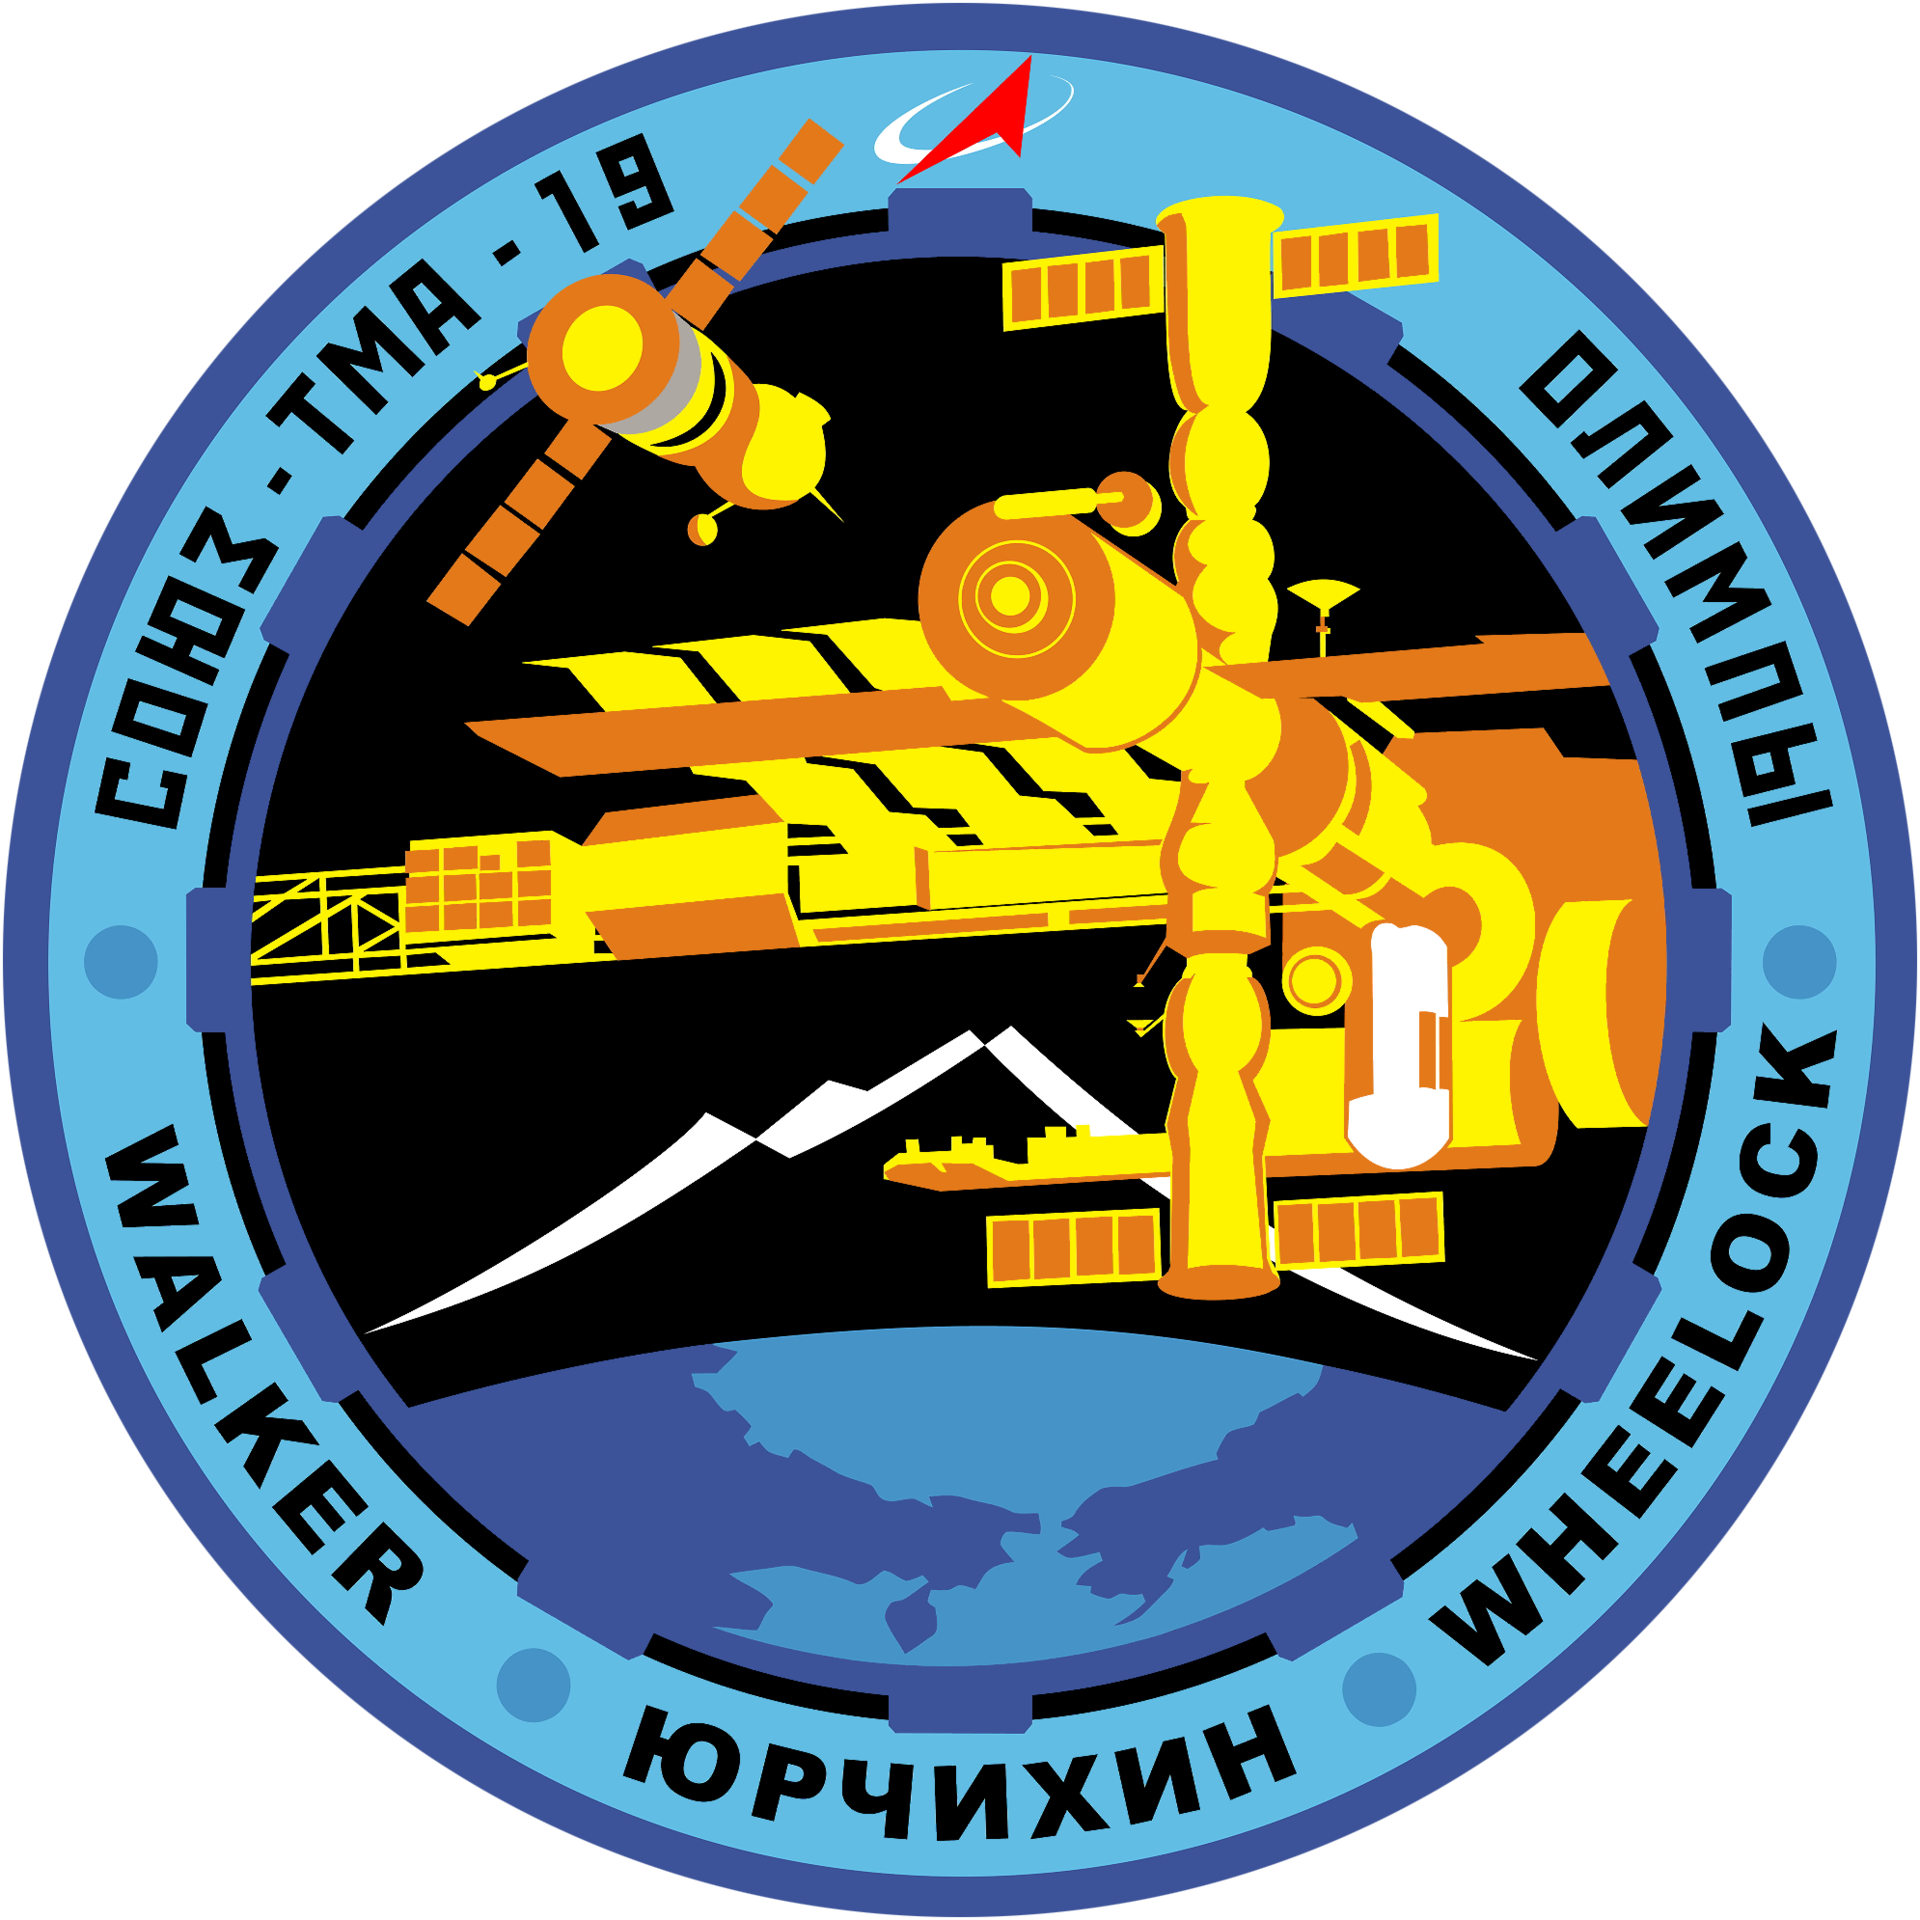 Soyuz TMA-19